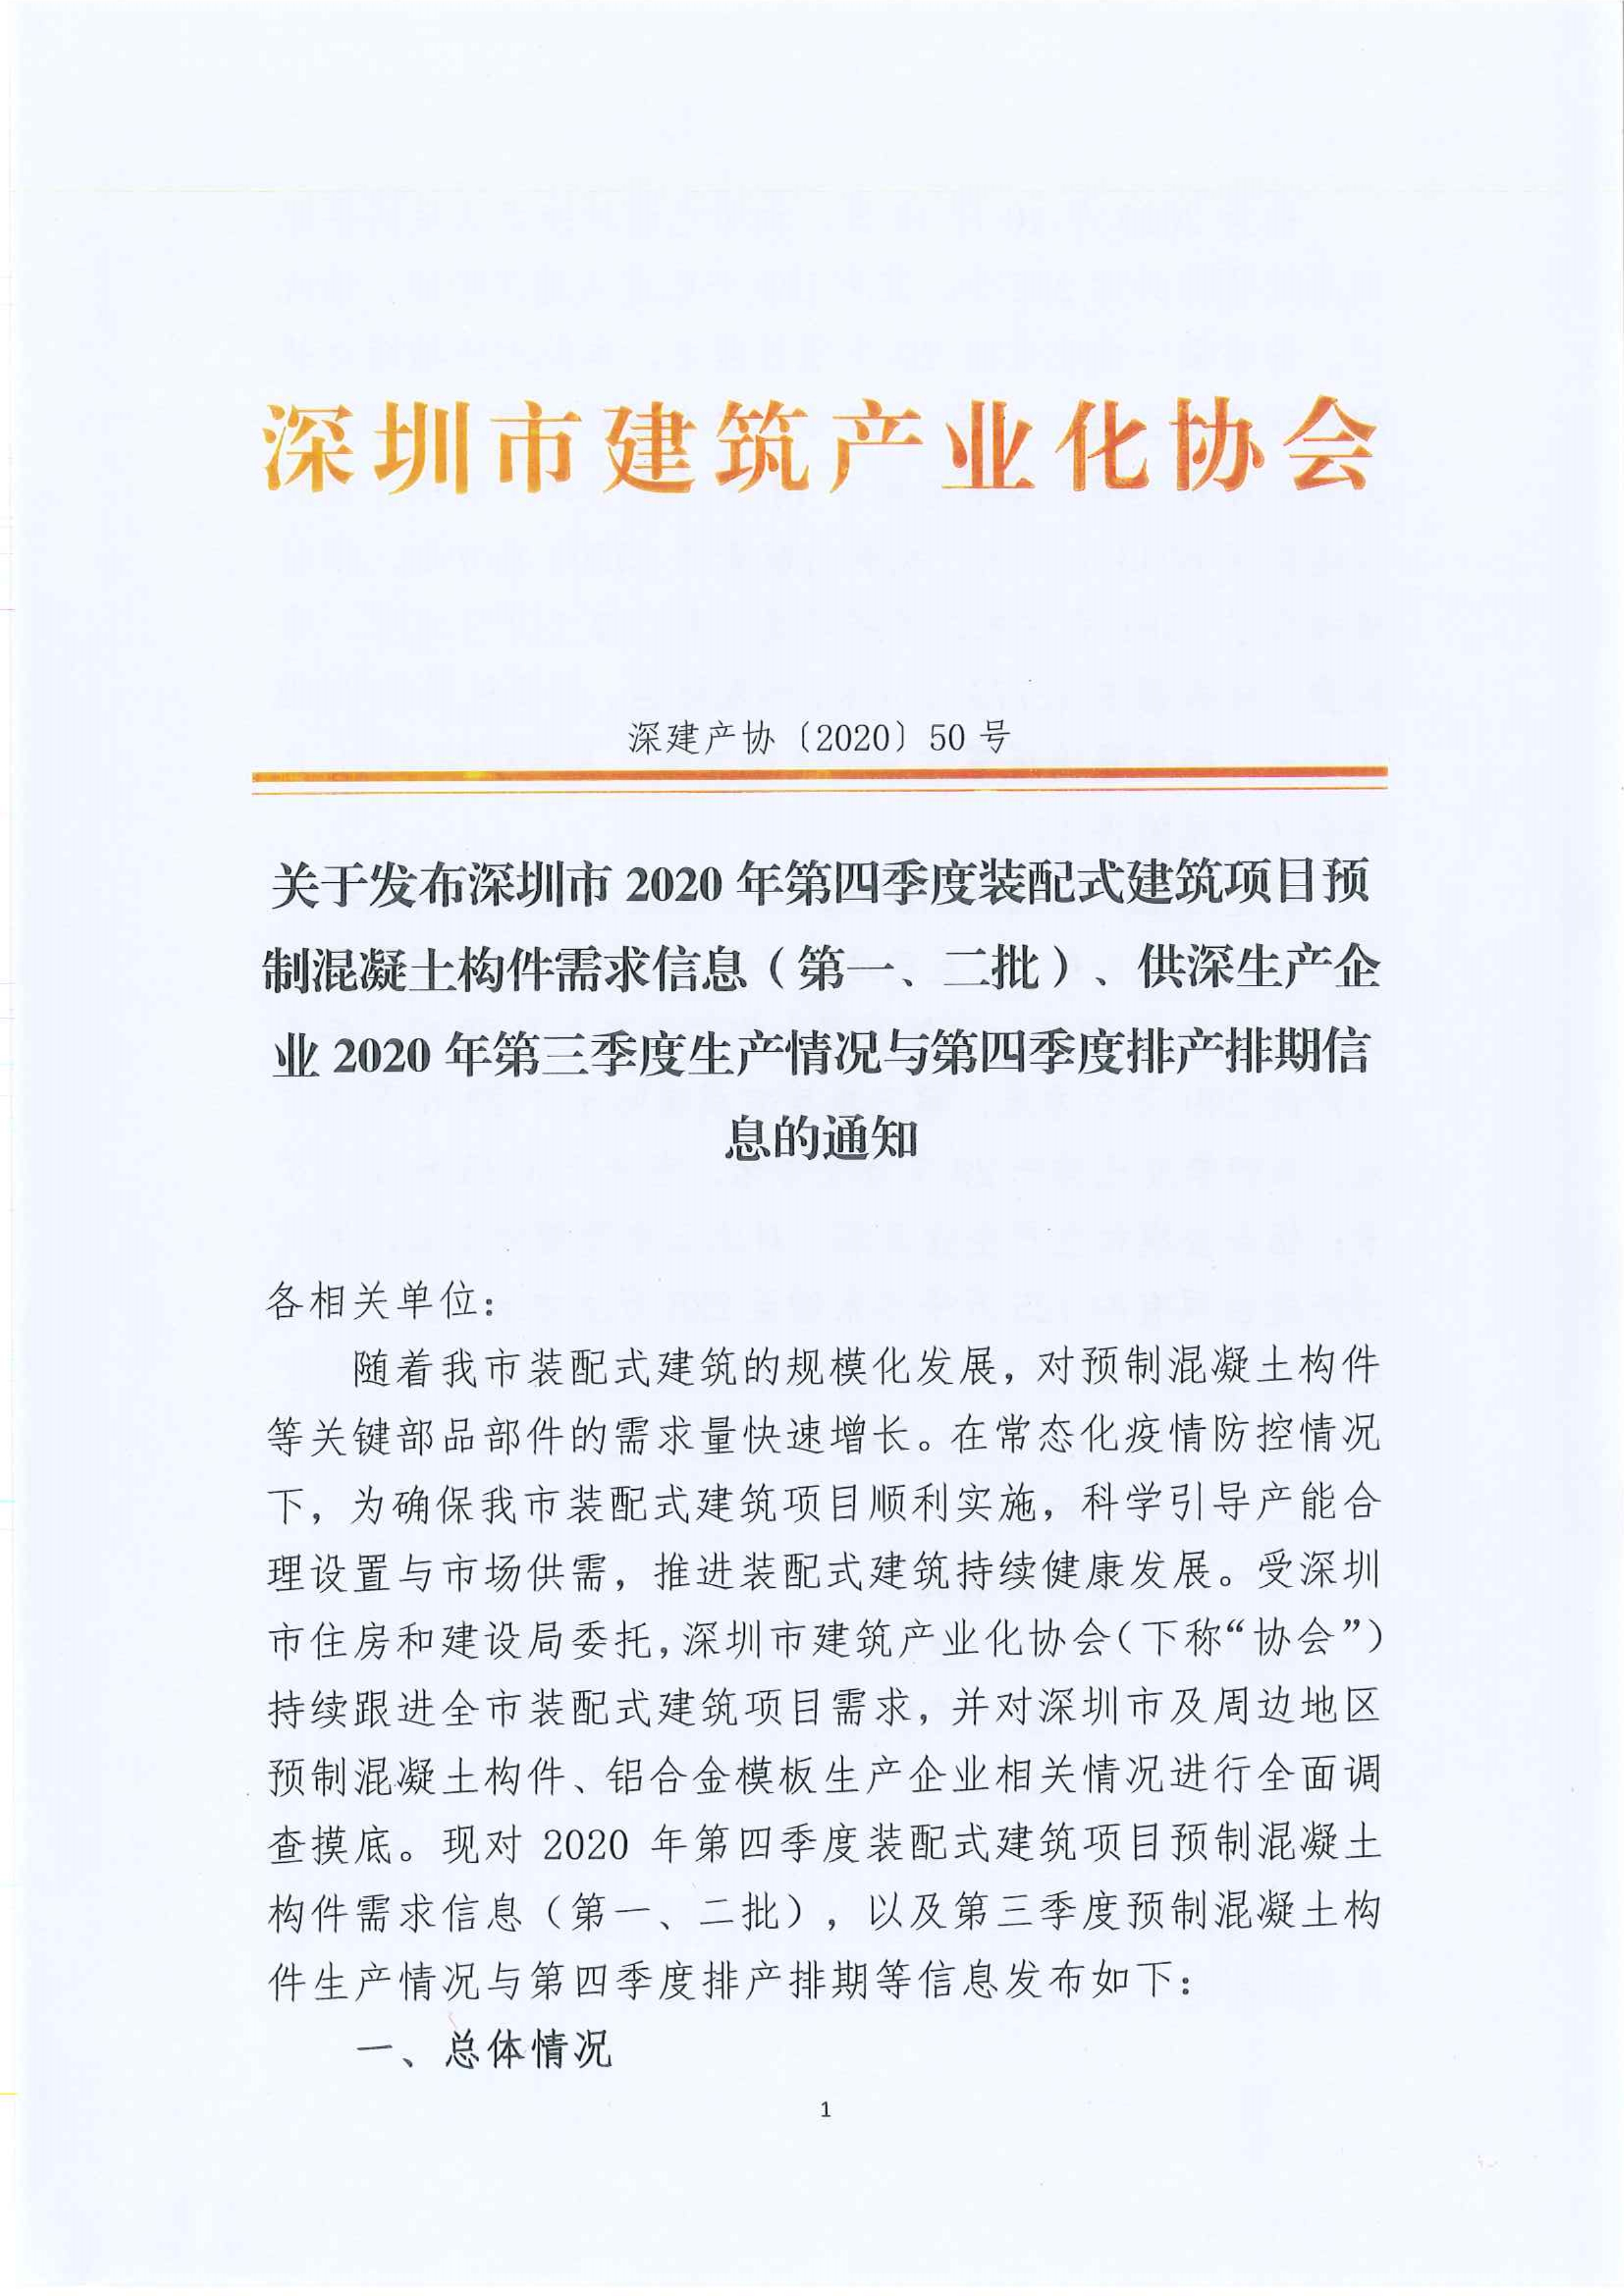 关于发布深圳市2020年第四季度装配式建筑项目预制混凝土构件需求信息（第一、二批）、供深生产企业2020年第三季度生产情况与第四季度排产排期信息的通知